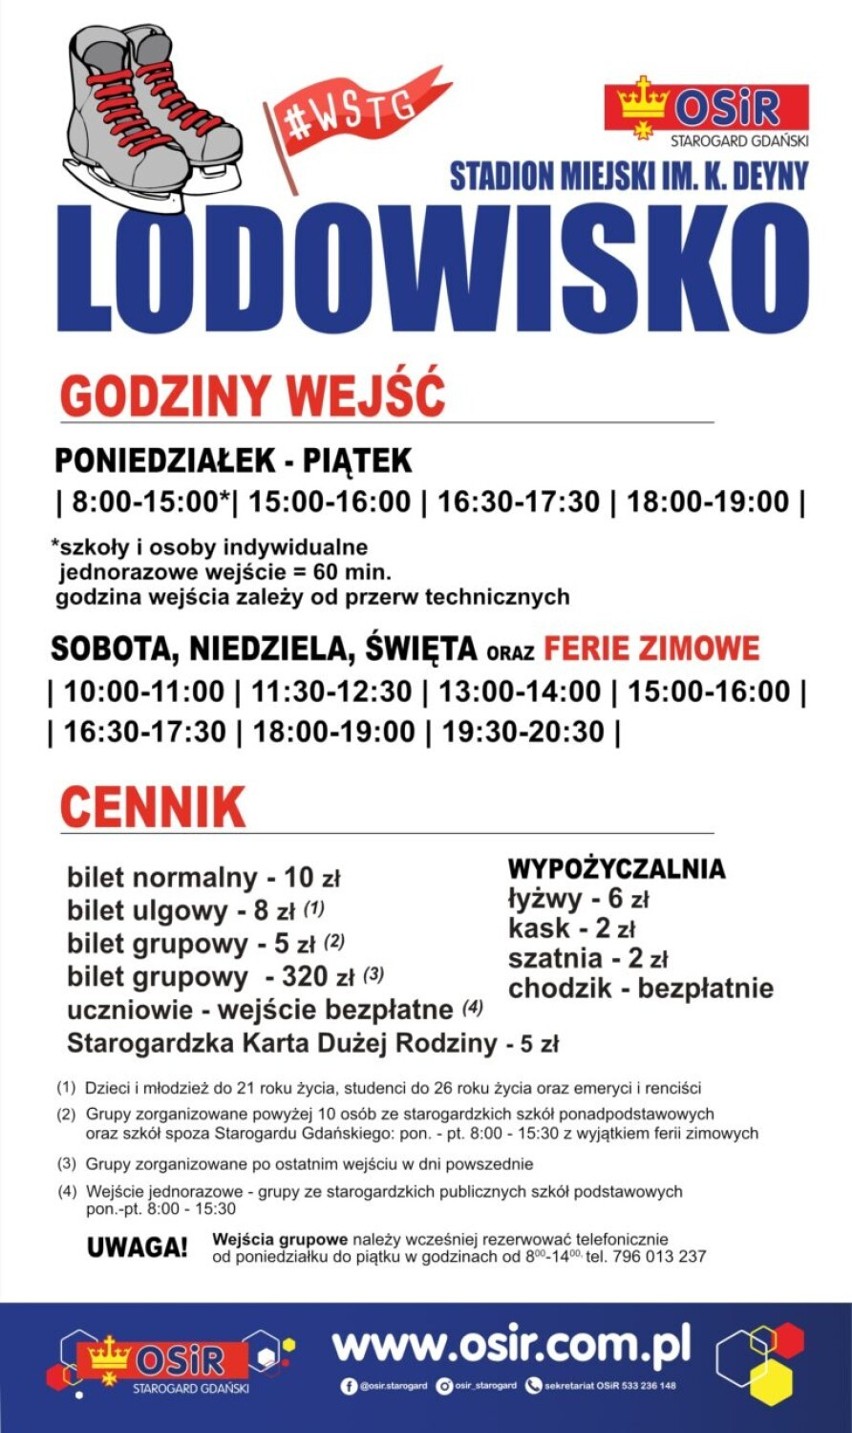 Lodowisko w Starogardzie Gdańskim jest już otwarte!